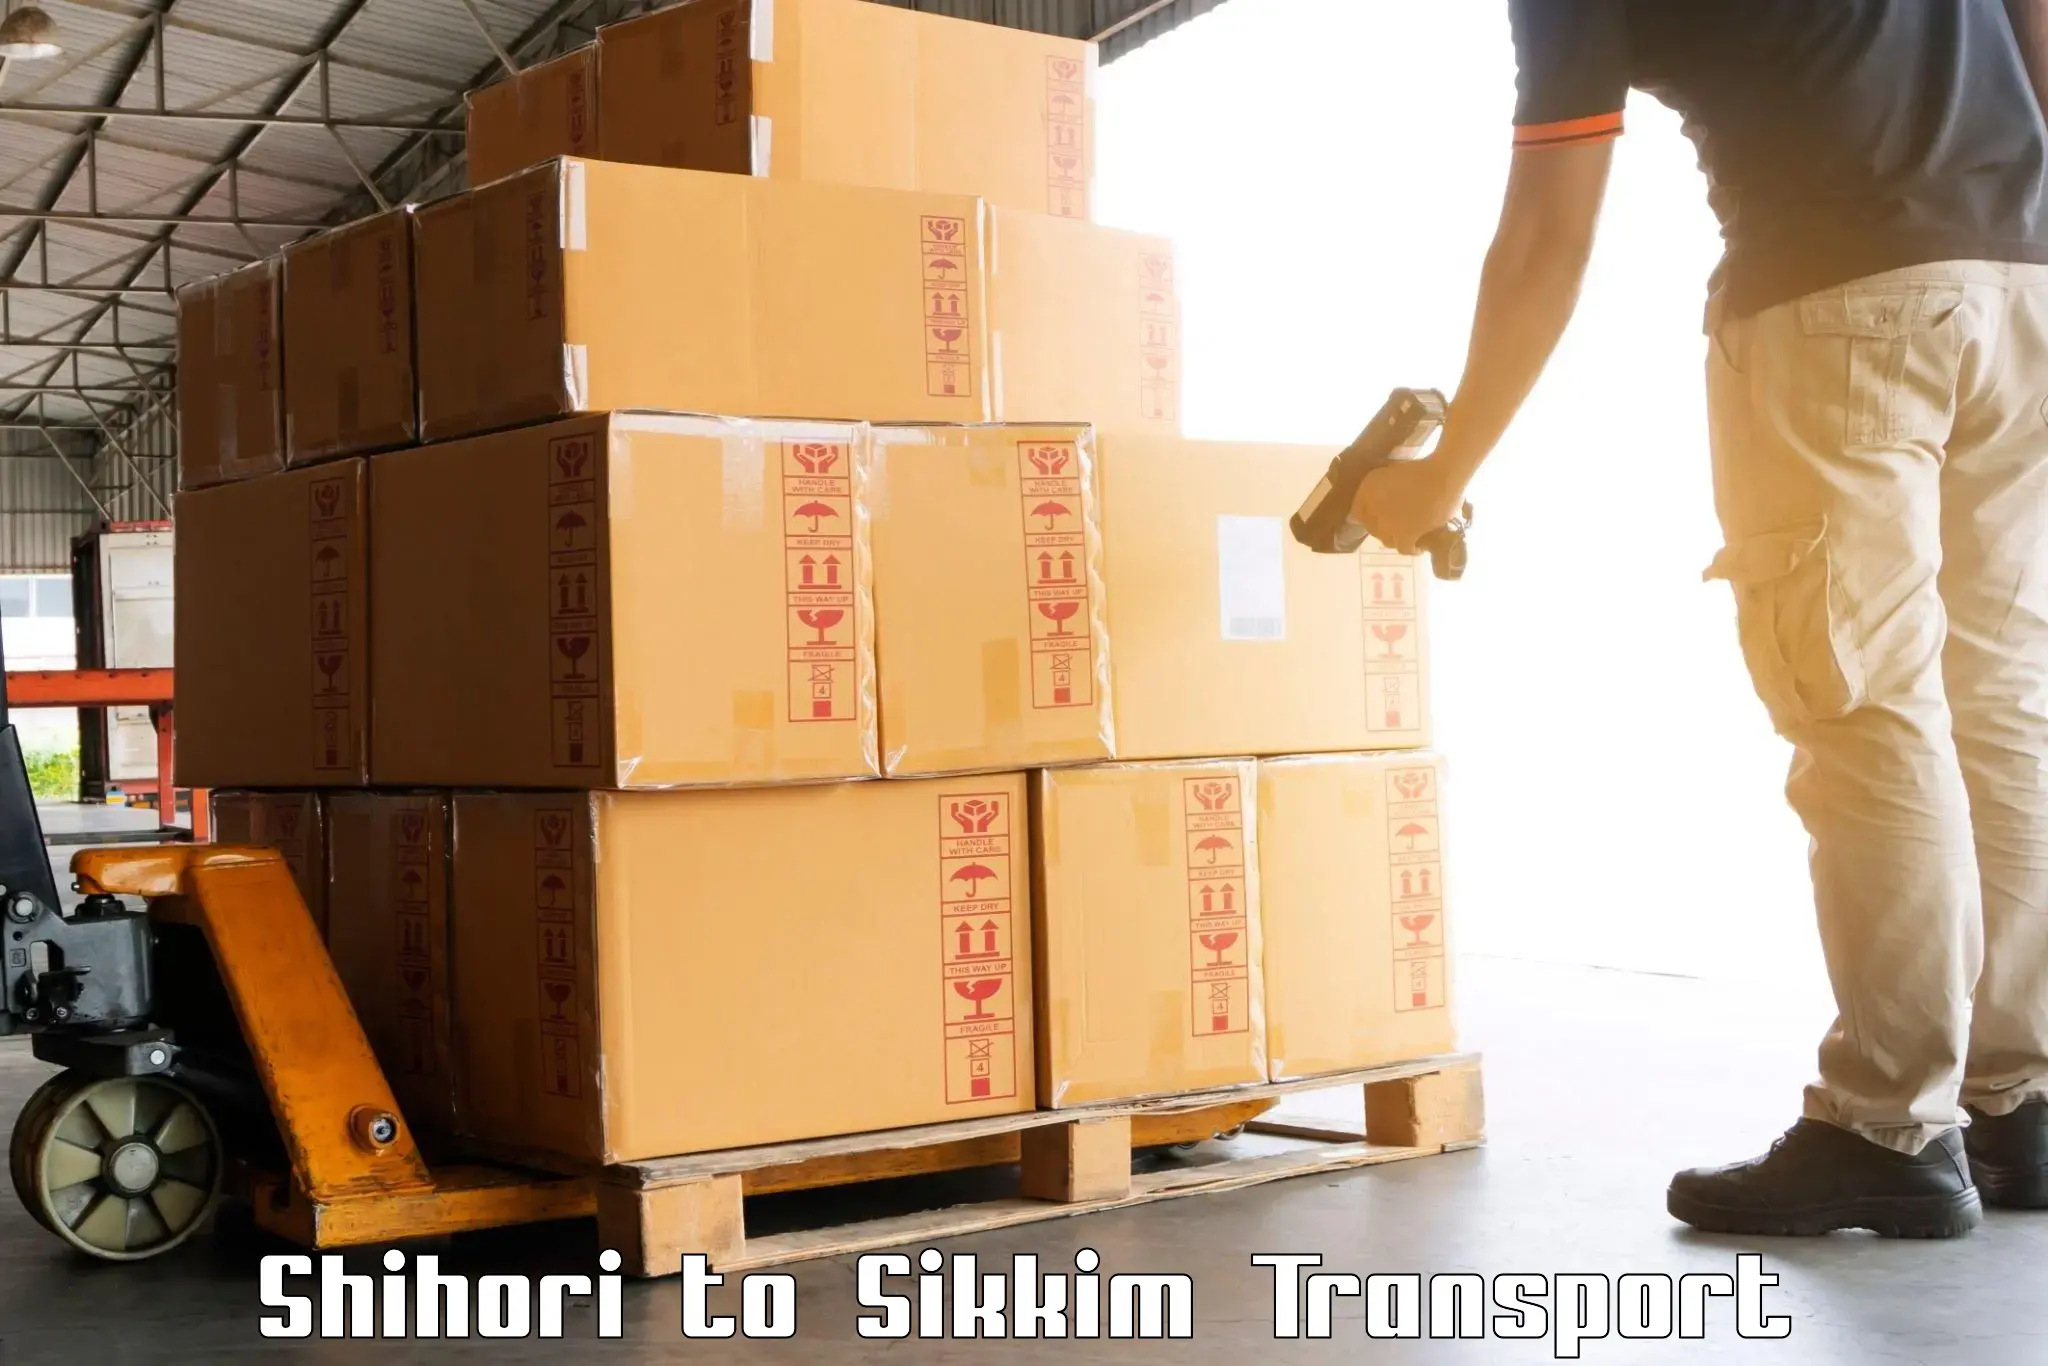 Online transport booking Shihori to Jorethang